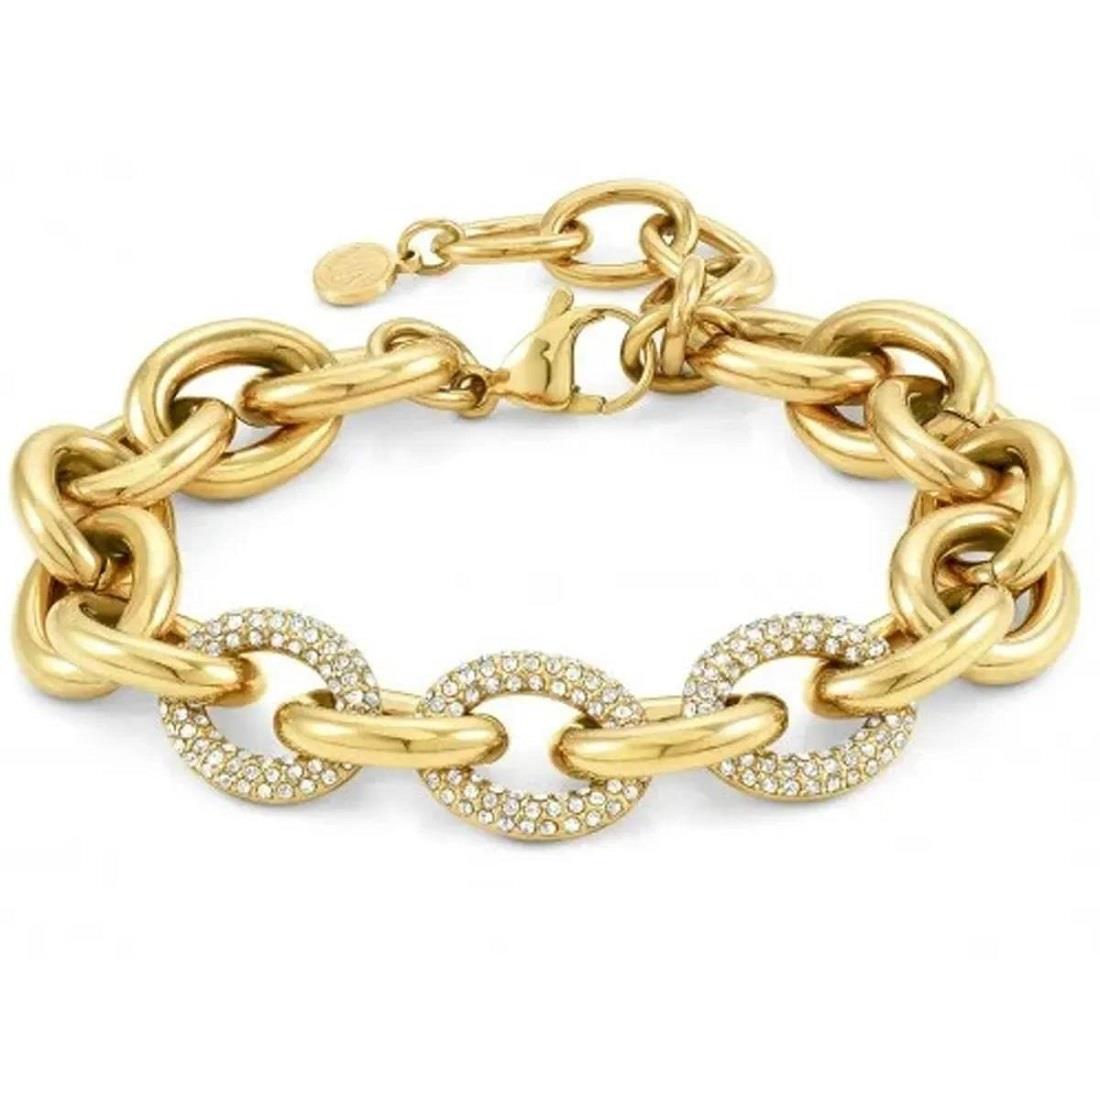 Gold steel bracelet - NOMINATION